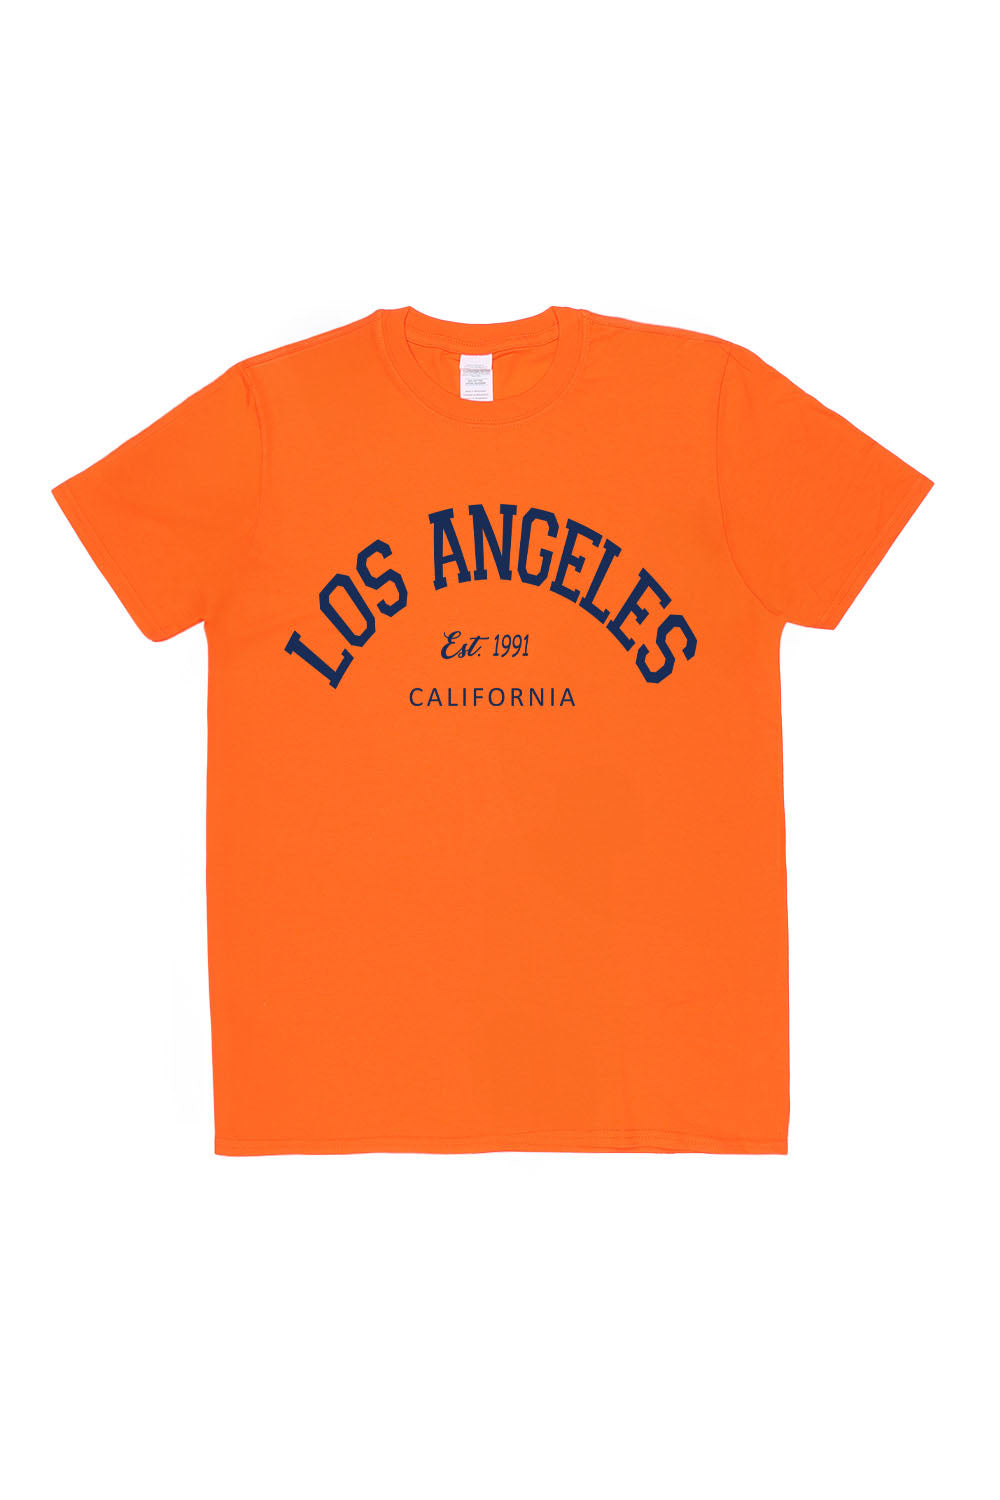 Los Angeles T-Shirt in Orange (Custom Packs)